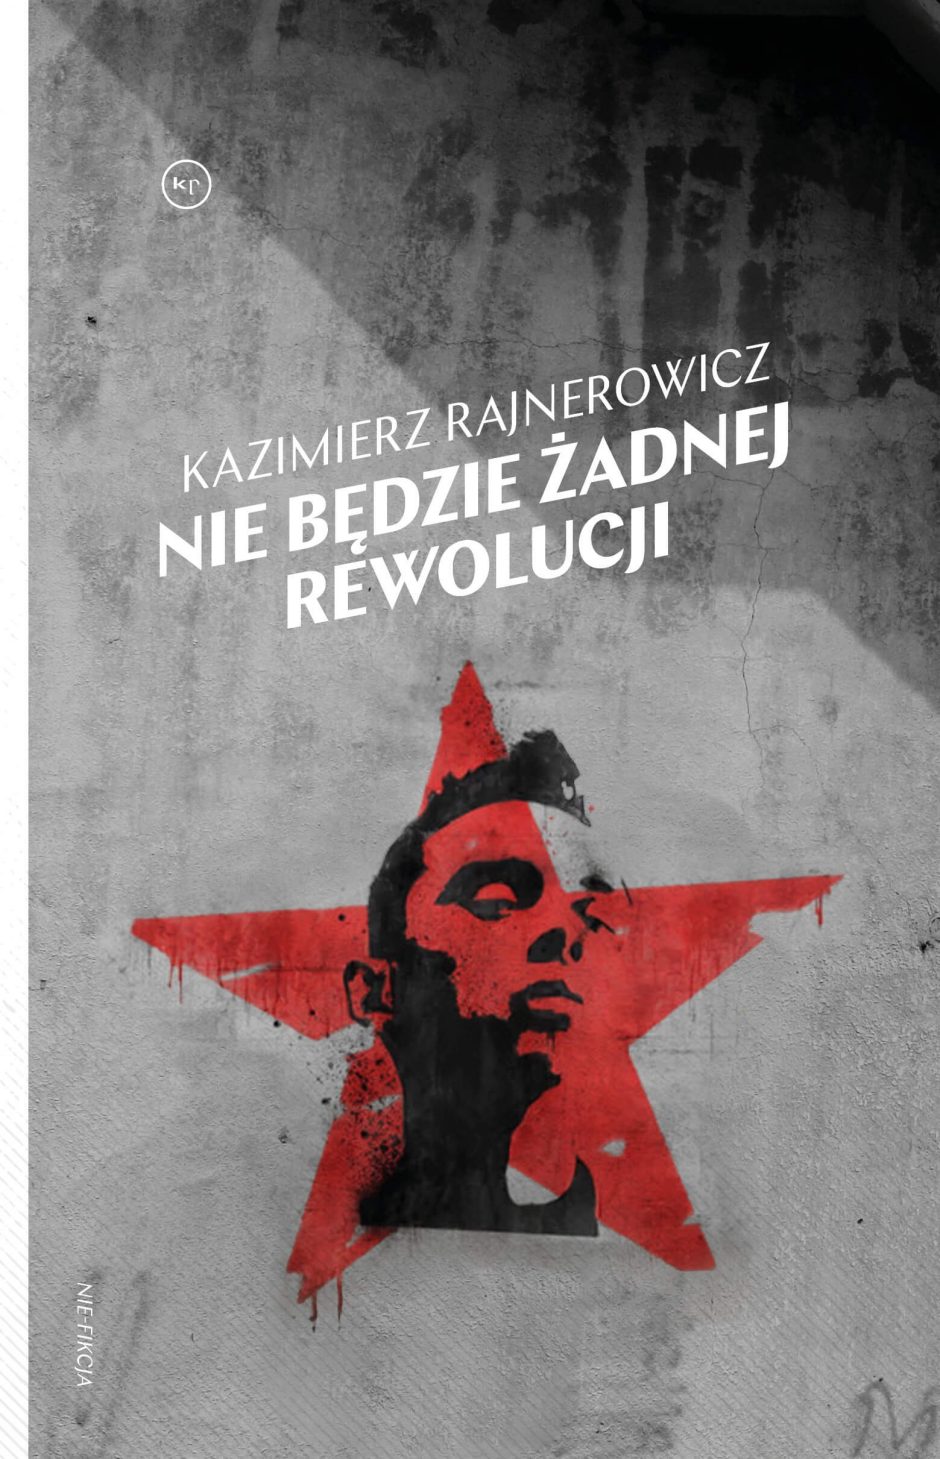 Kazimierz Rajnerowicz: Nie będzie żadnej rewolucji